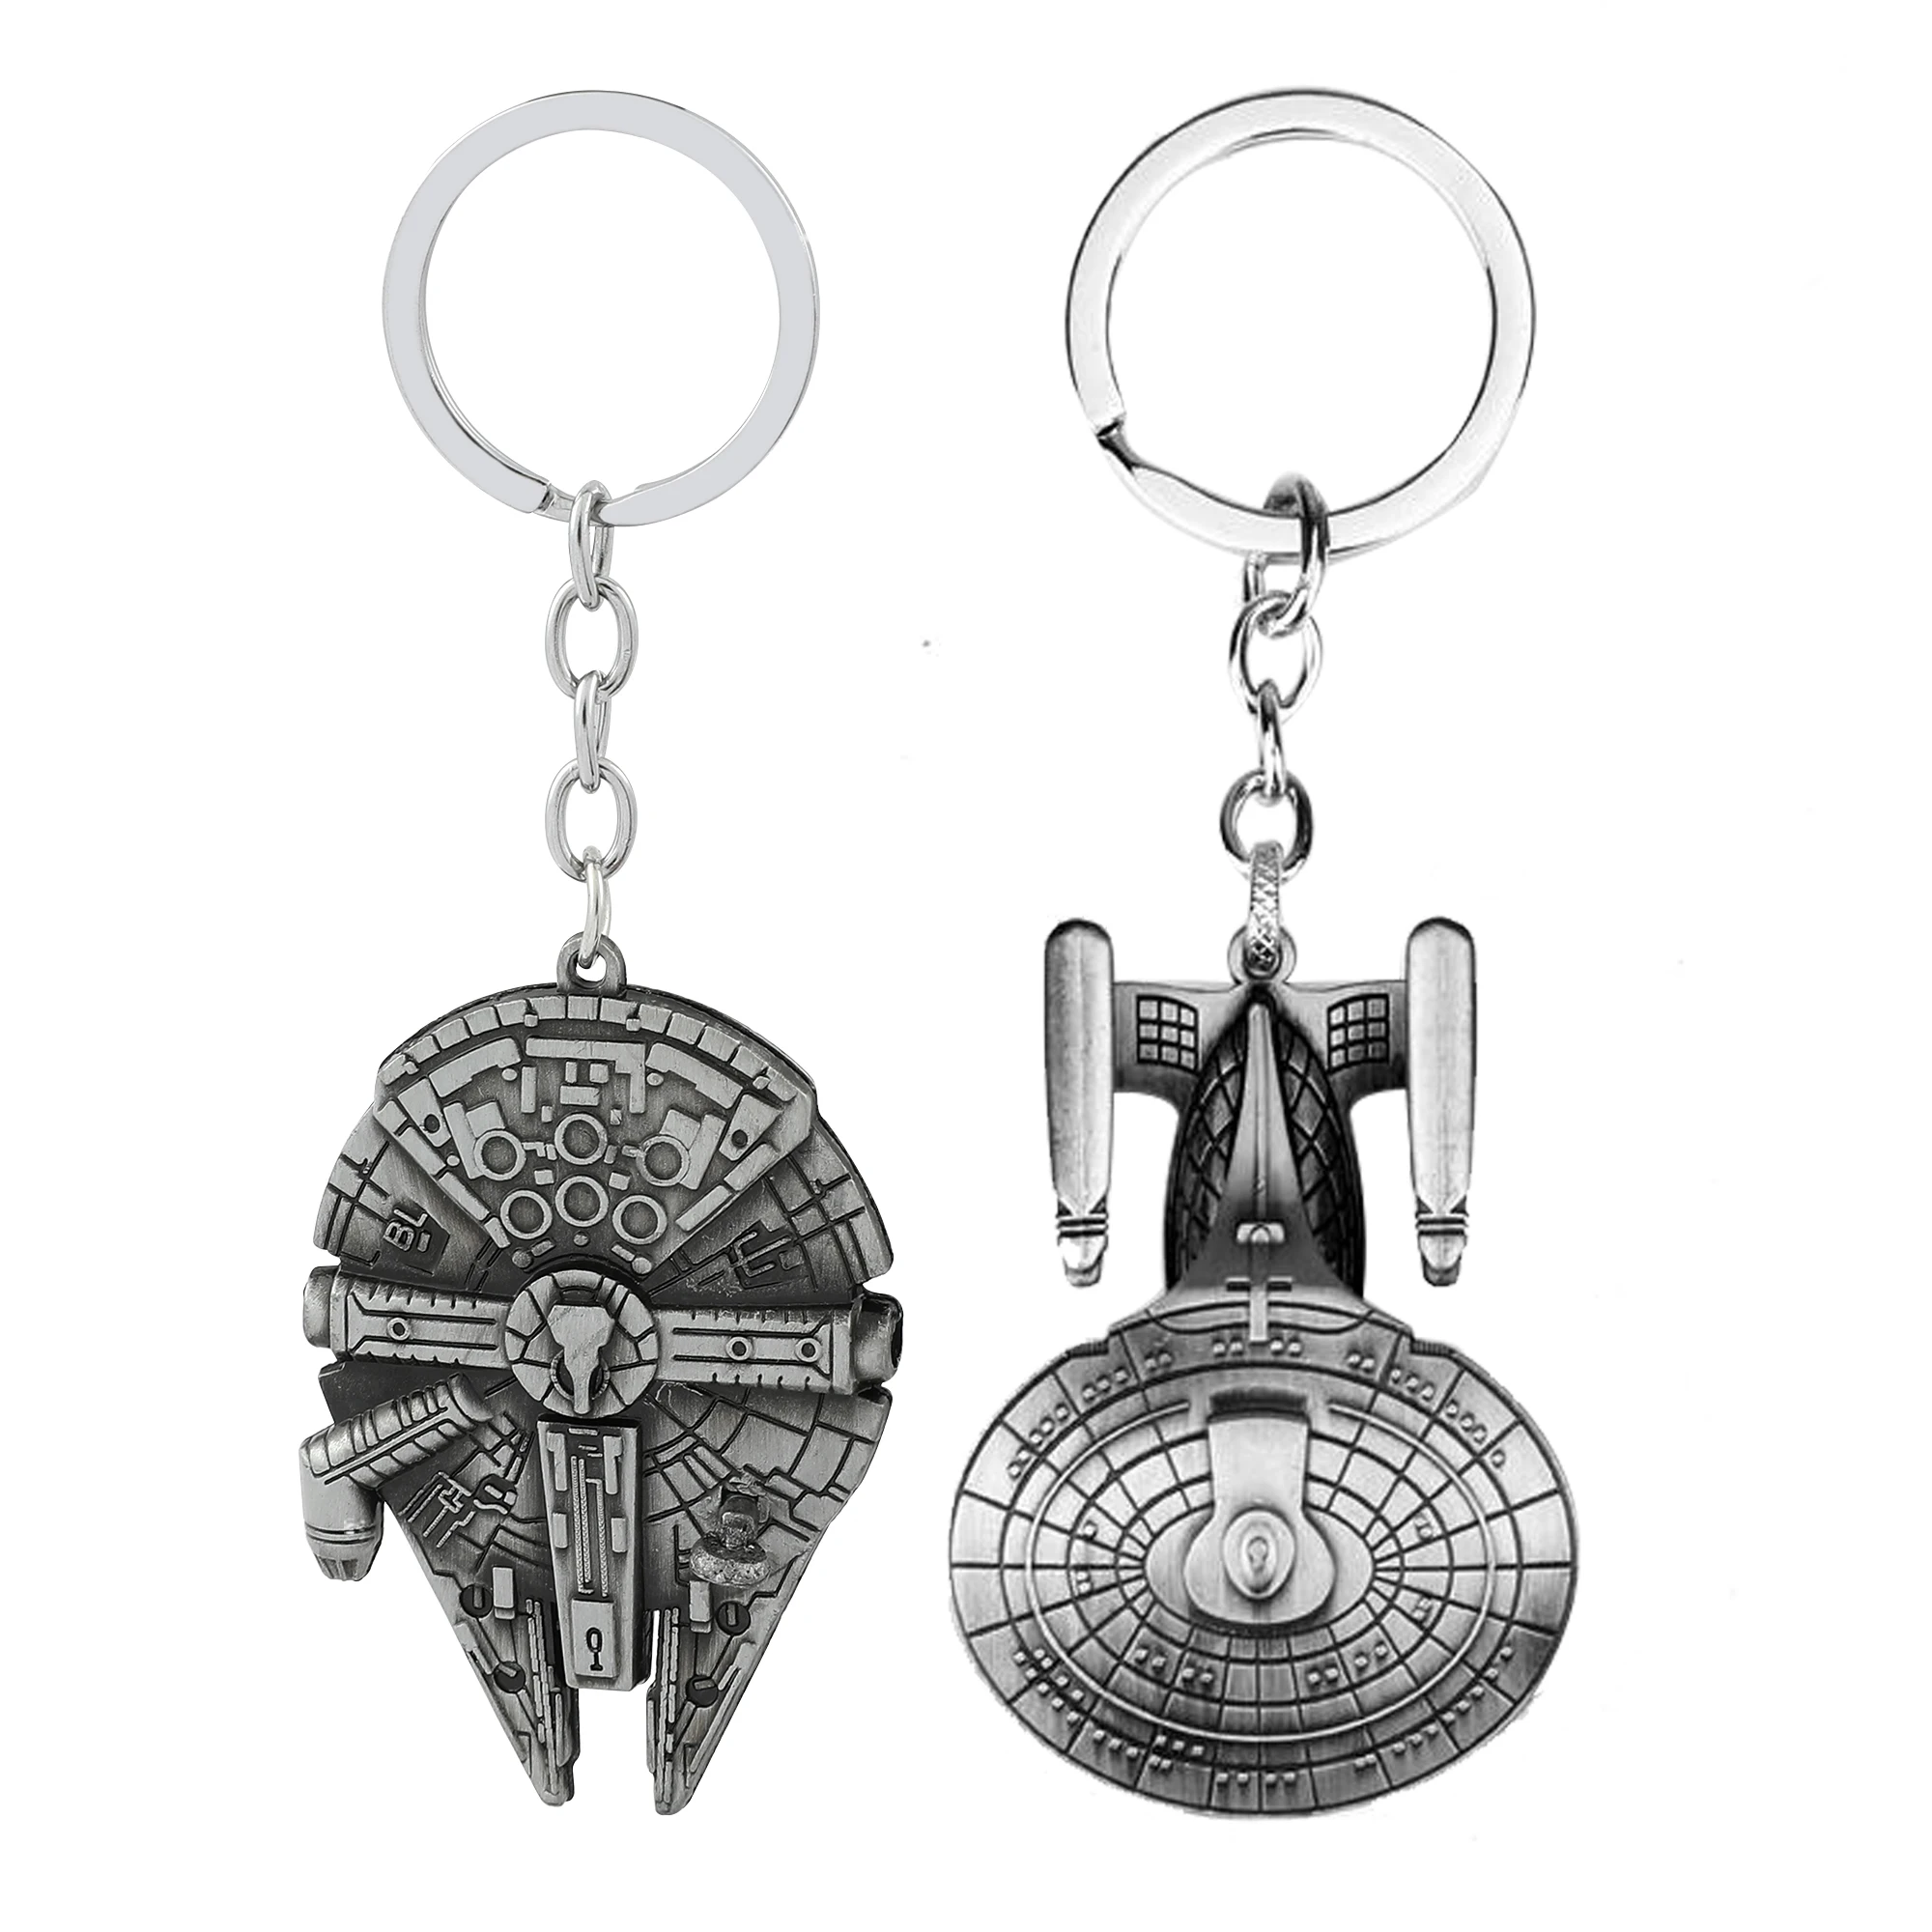 Star Wars Millennium Falcon Raumschiff Schlüssel Kette Cute Dog Schlüsselanhänger Auto Keychain Auto Schlüssel für Männer Auto Zubehör für Frauen keychain